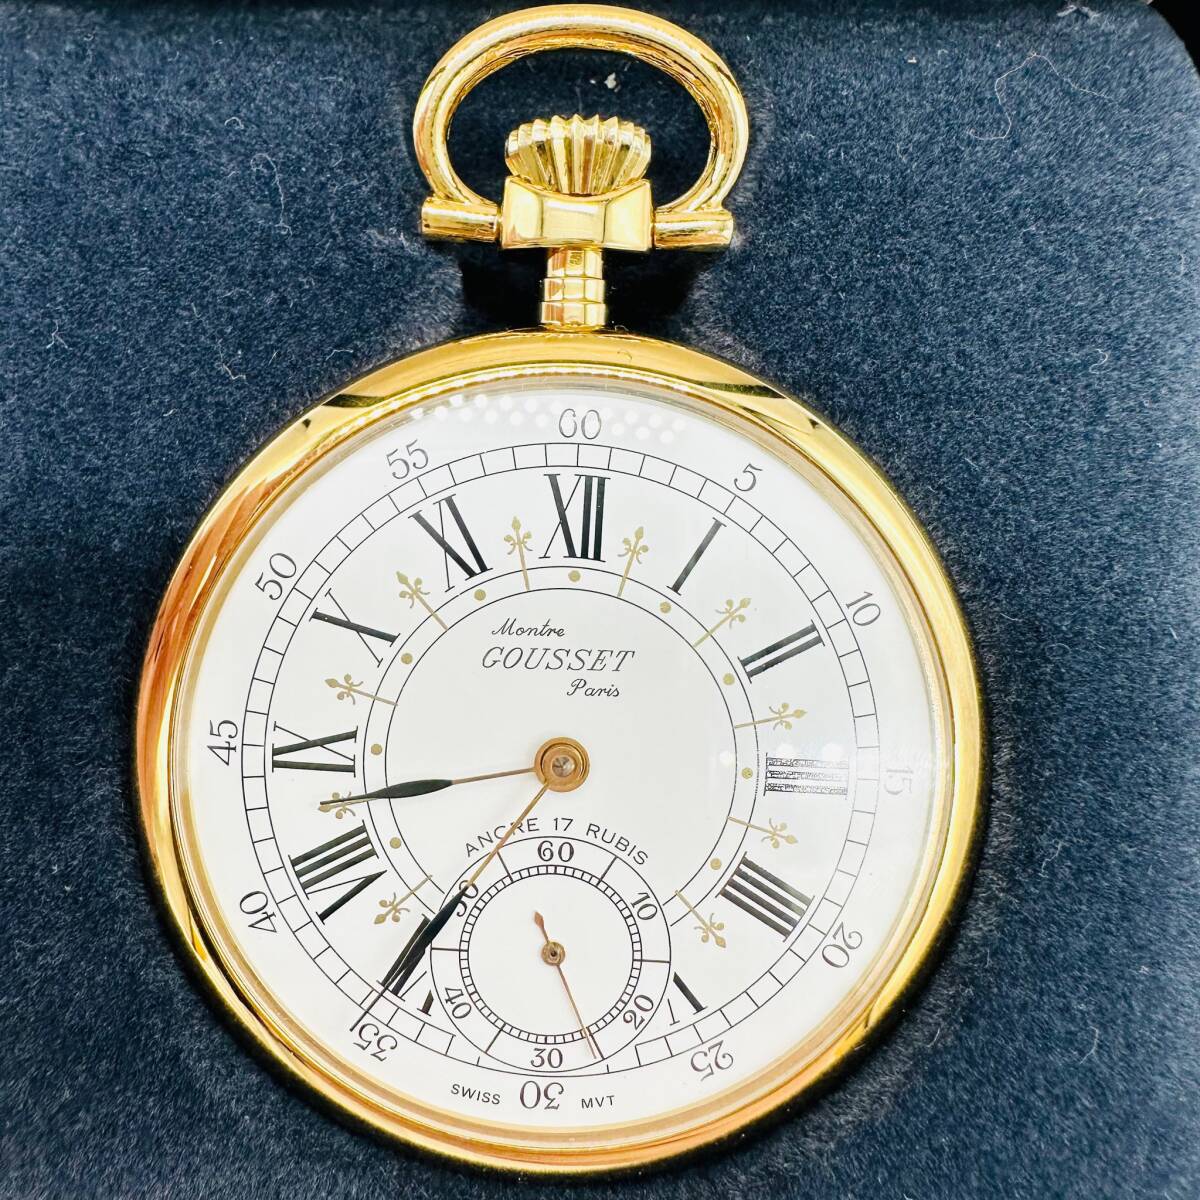 Montre GOUSSET Parisg Z механический завод часы карманные часы работа товар smoseko с коробкой симпатичный Швейцария 1 иен лот коллекция аксессуары 3865